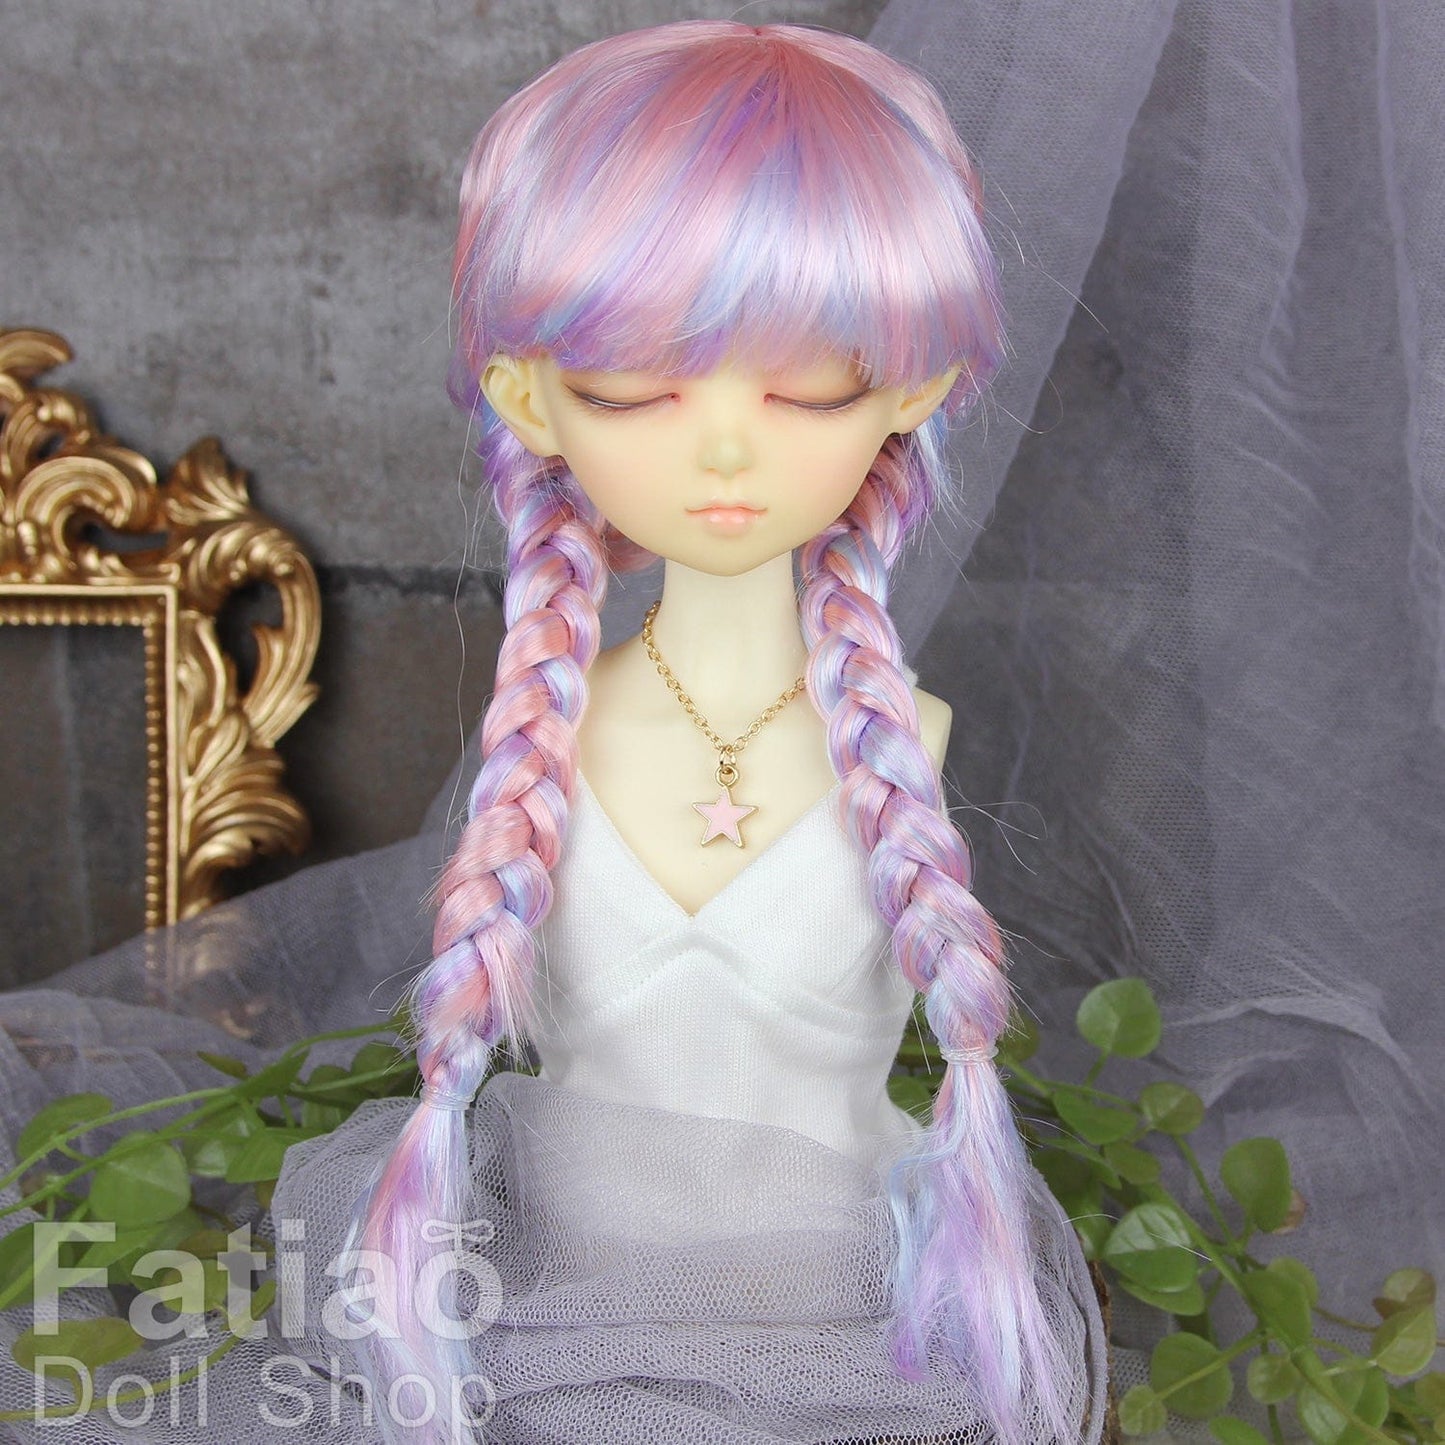 【Fatiao Doll Shop】FWF-691 娃用假髮 多色 / 7-8吋 BJD 4分